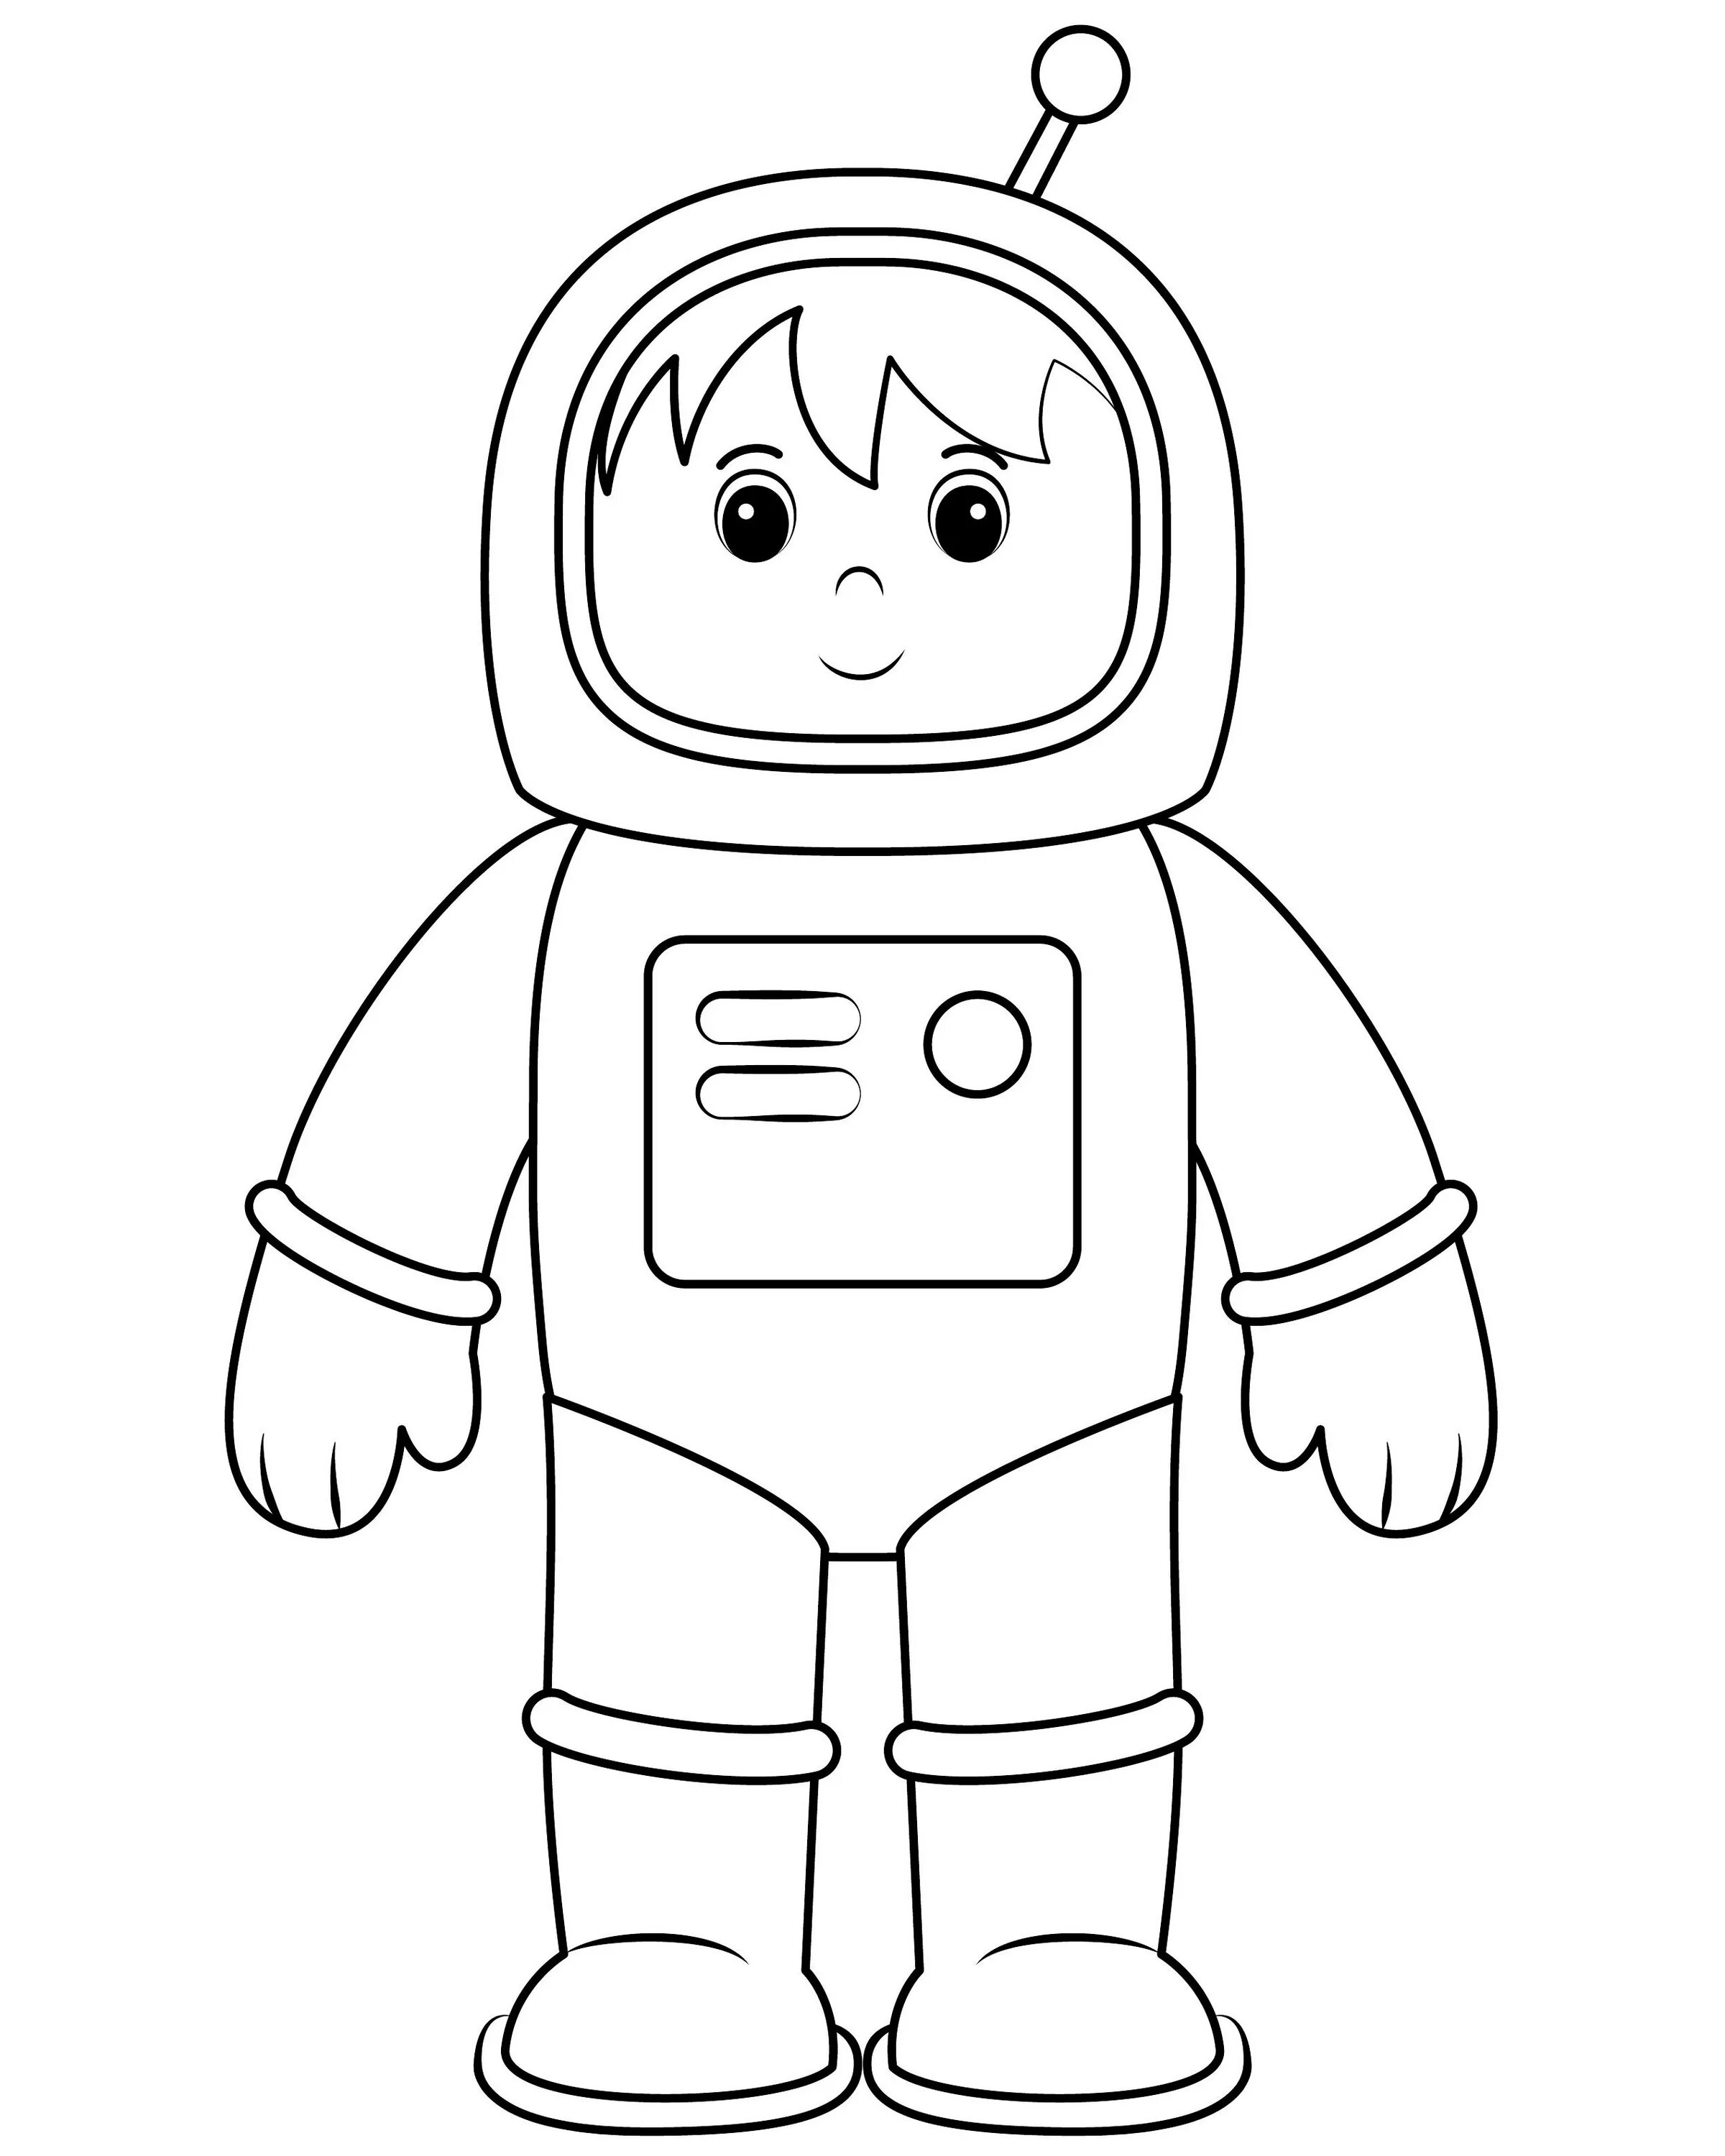 Шаблон космонавта для вырезания из бумаги распечатать. Космонавт раскраска для детей. Космонавт раскраска для малышей. Космонавт для раскрашивания для детей. Раскраска Космонавта в скафандре для детей.